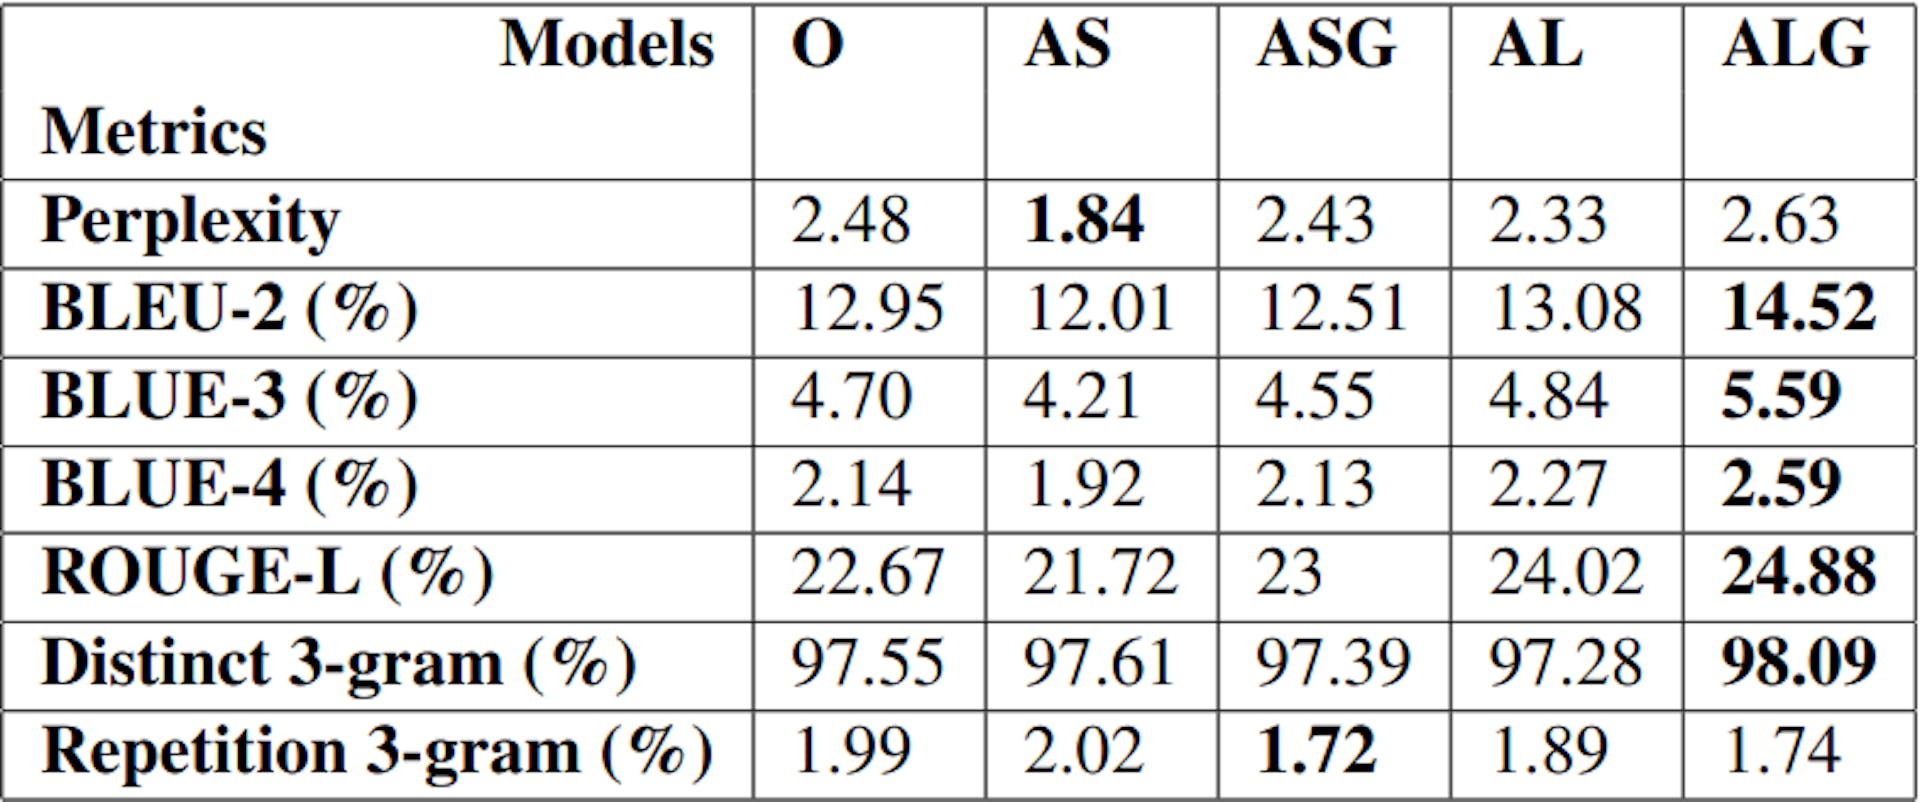 Tabelle 1: Bewertungen aus gängigen Bewertungsmaßstäben für 5 Hollywood-Plotgenerierungsmodelle, feinabgestimmt auf GPT-3 als O, AS, ASG, AL, ALG (5,1)